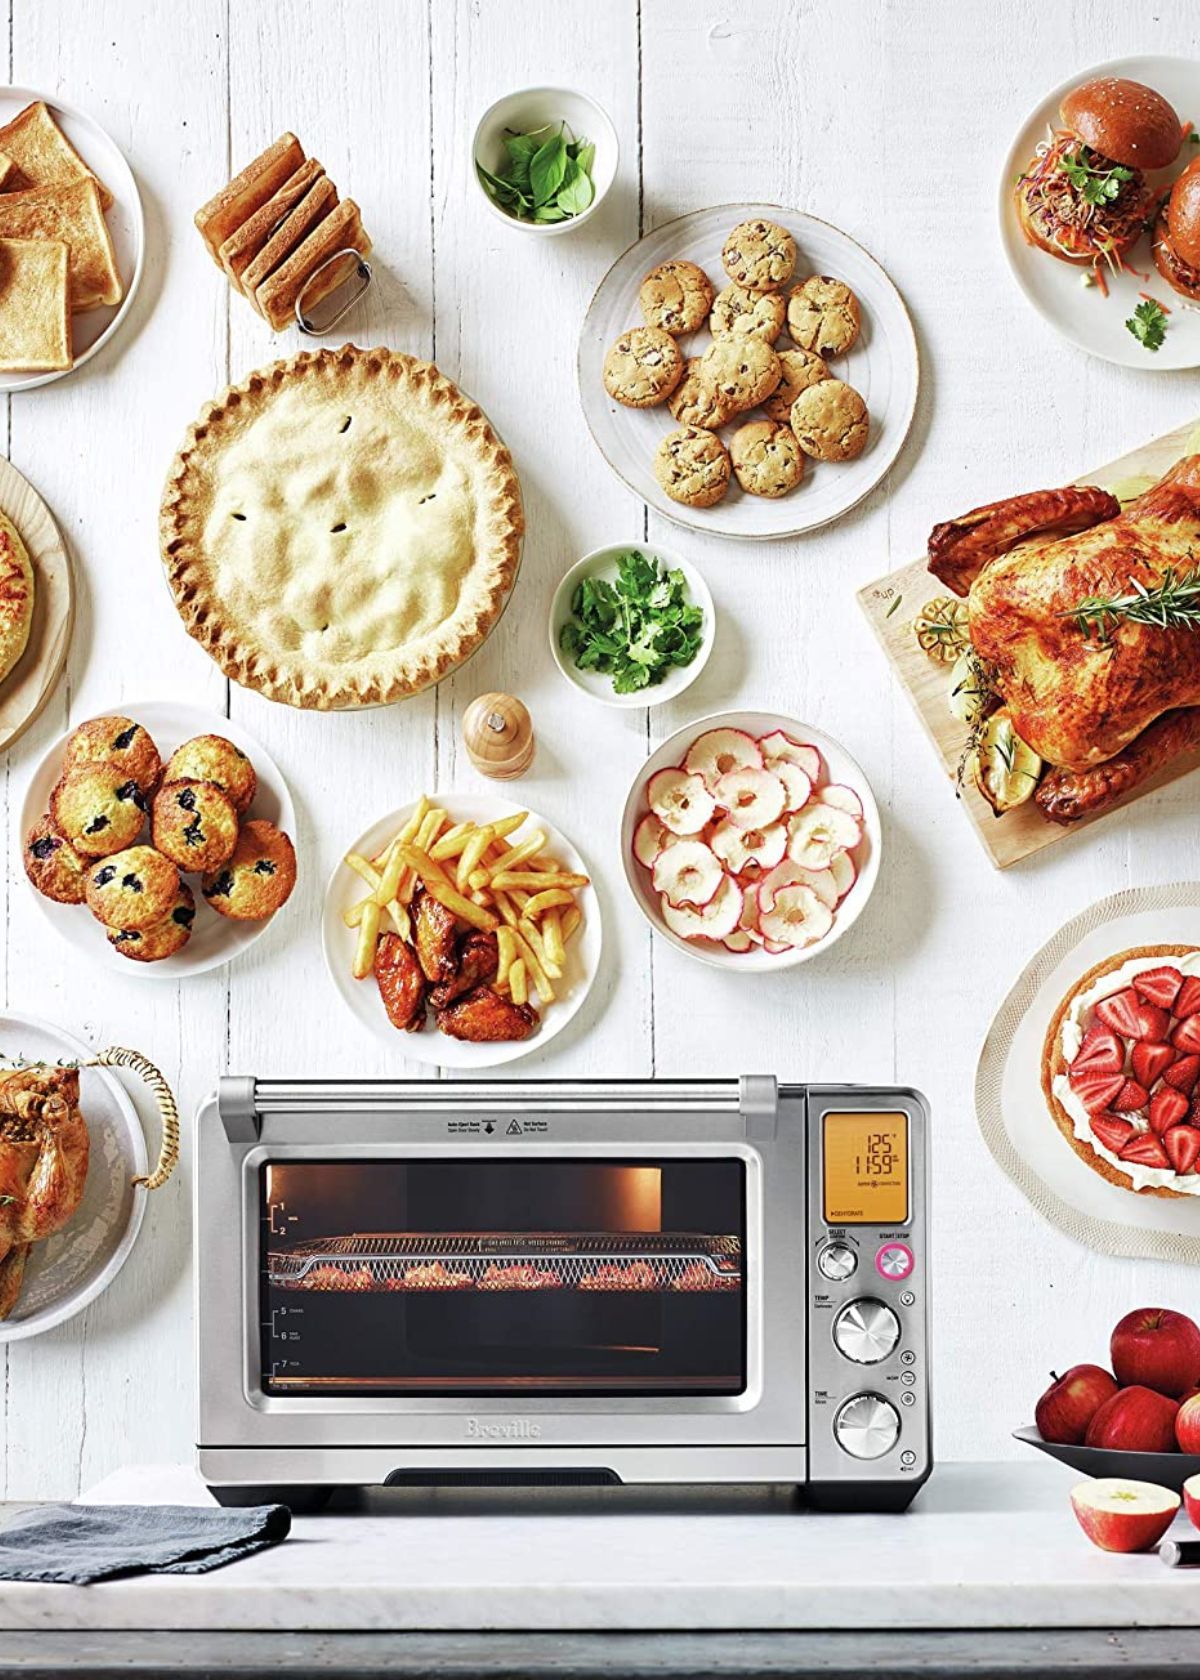 Best Air Fryer Microwave: Top 5 picks in 2023